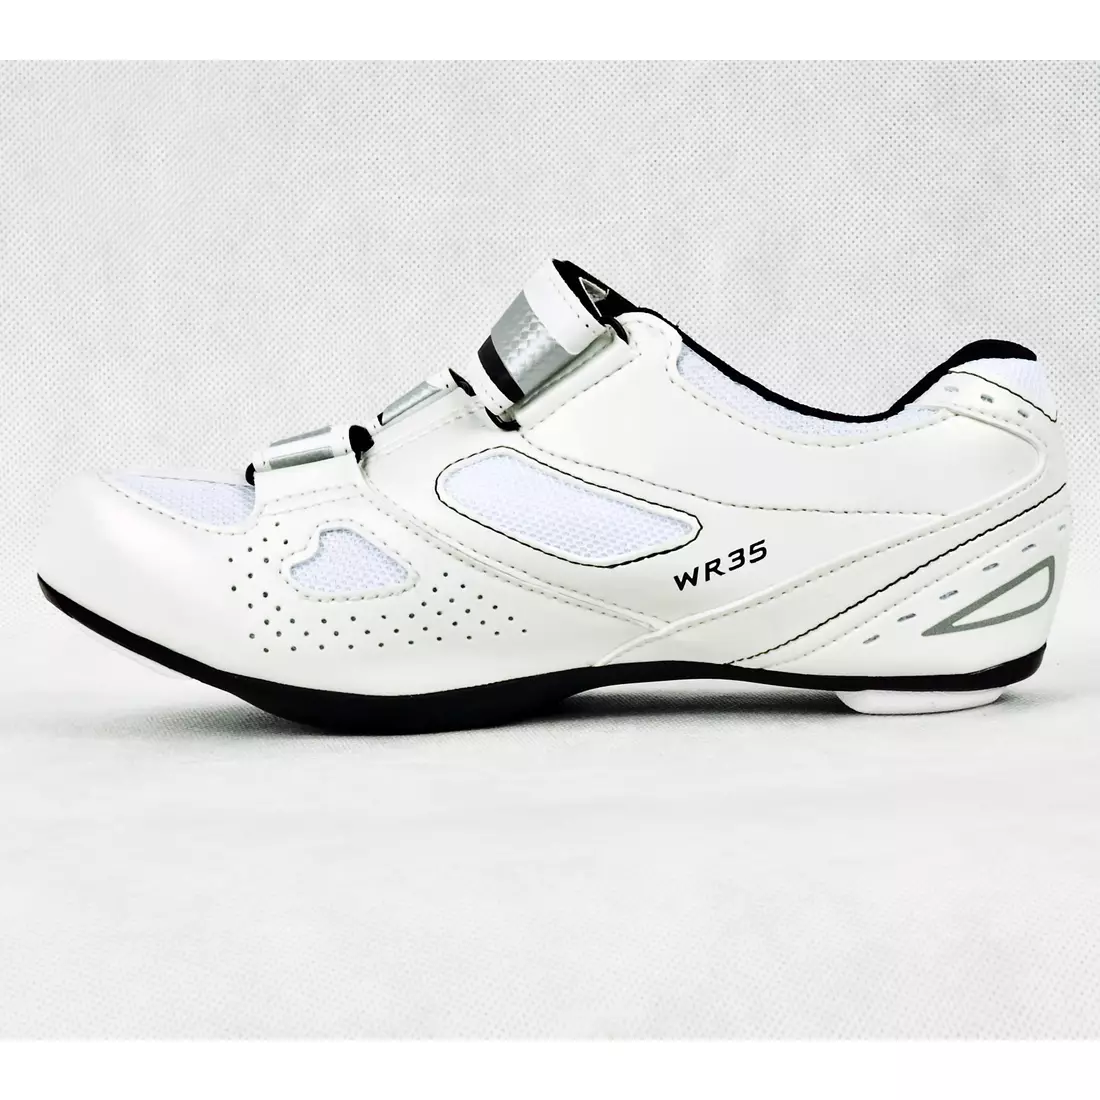 SHIMANO SH-WR35 - dámské silniční boty, barva: bílá